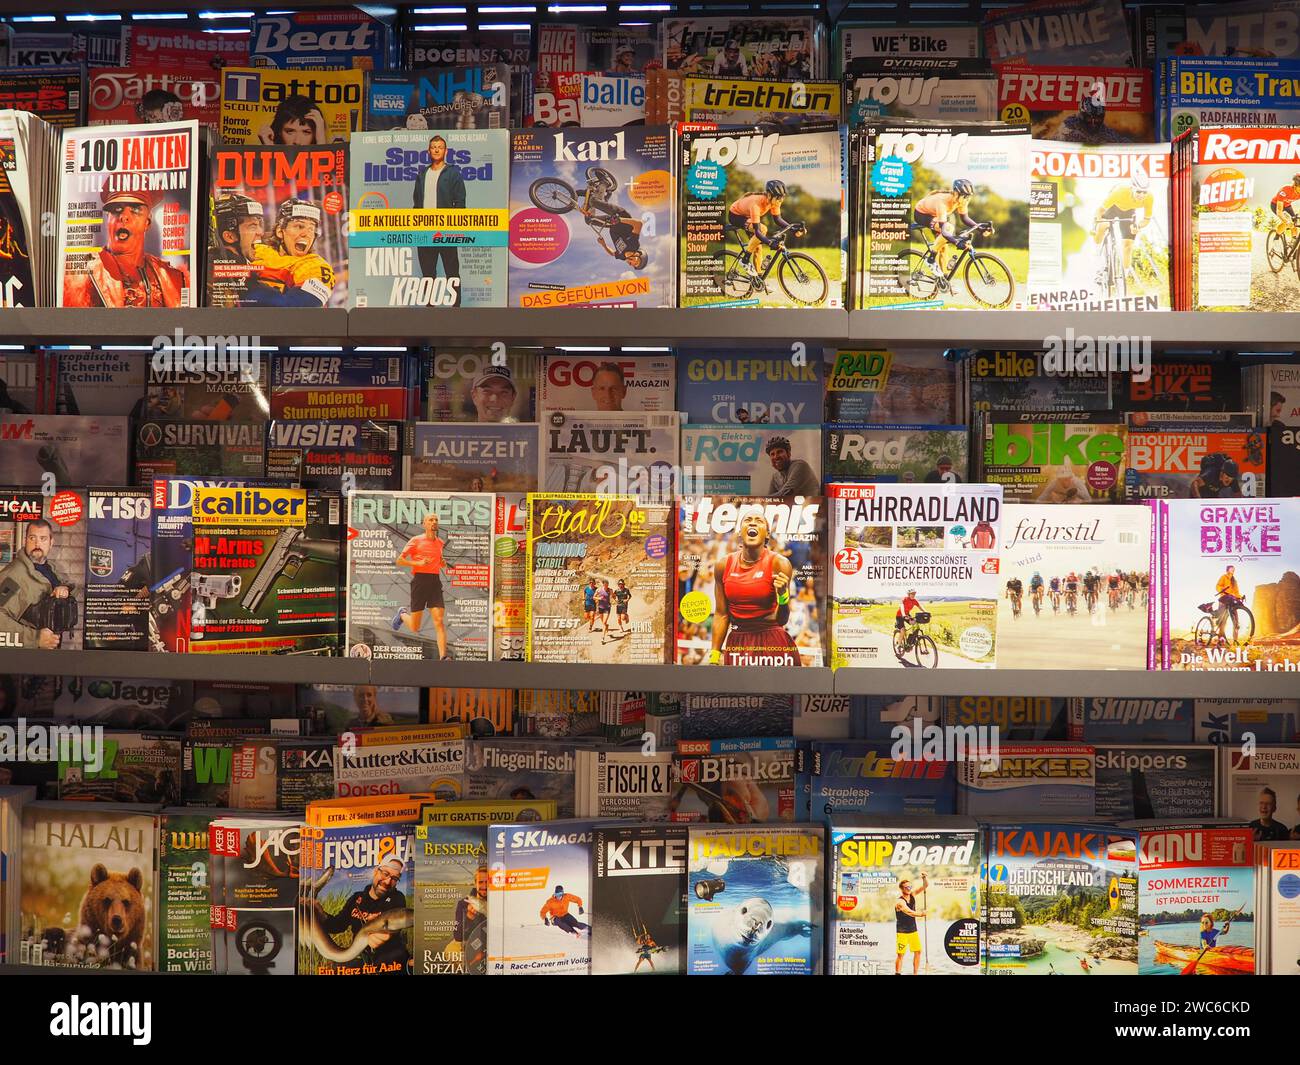 Vista frontale dello scaffale di riviste nella libreria della stazione ferroviaria, intrattenimento, sezione sportiva, tedesco, pagine di copertina, persone, bici, runner, riviste di viaggi Foto Stock